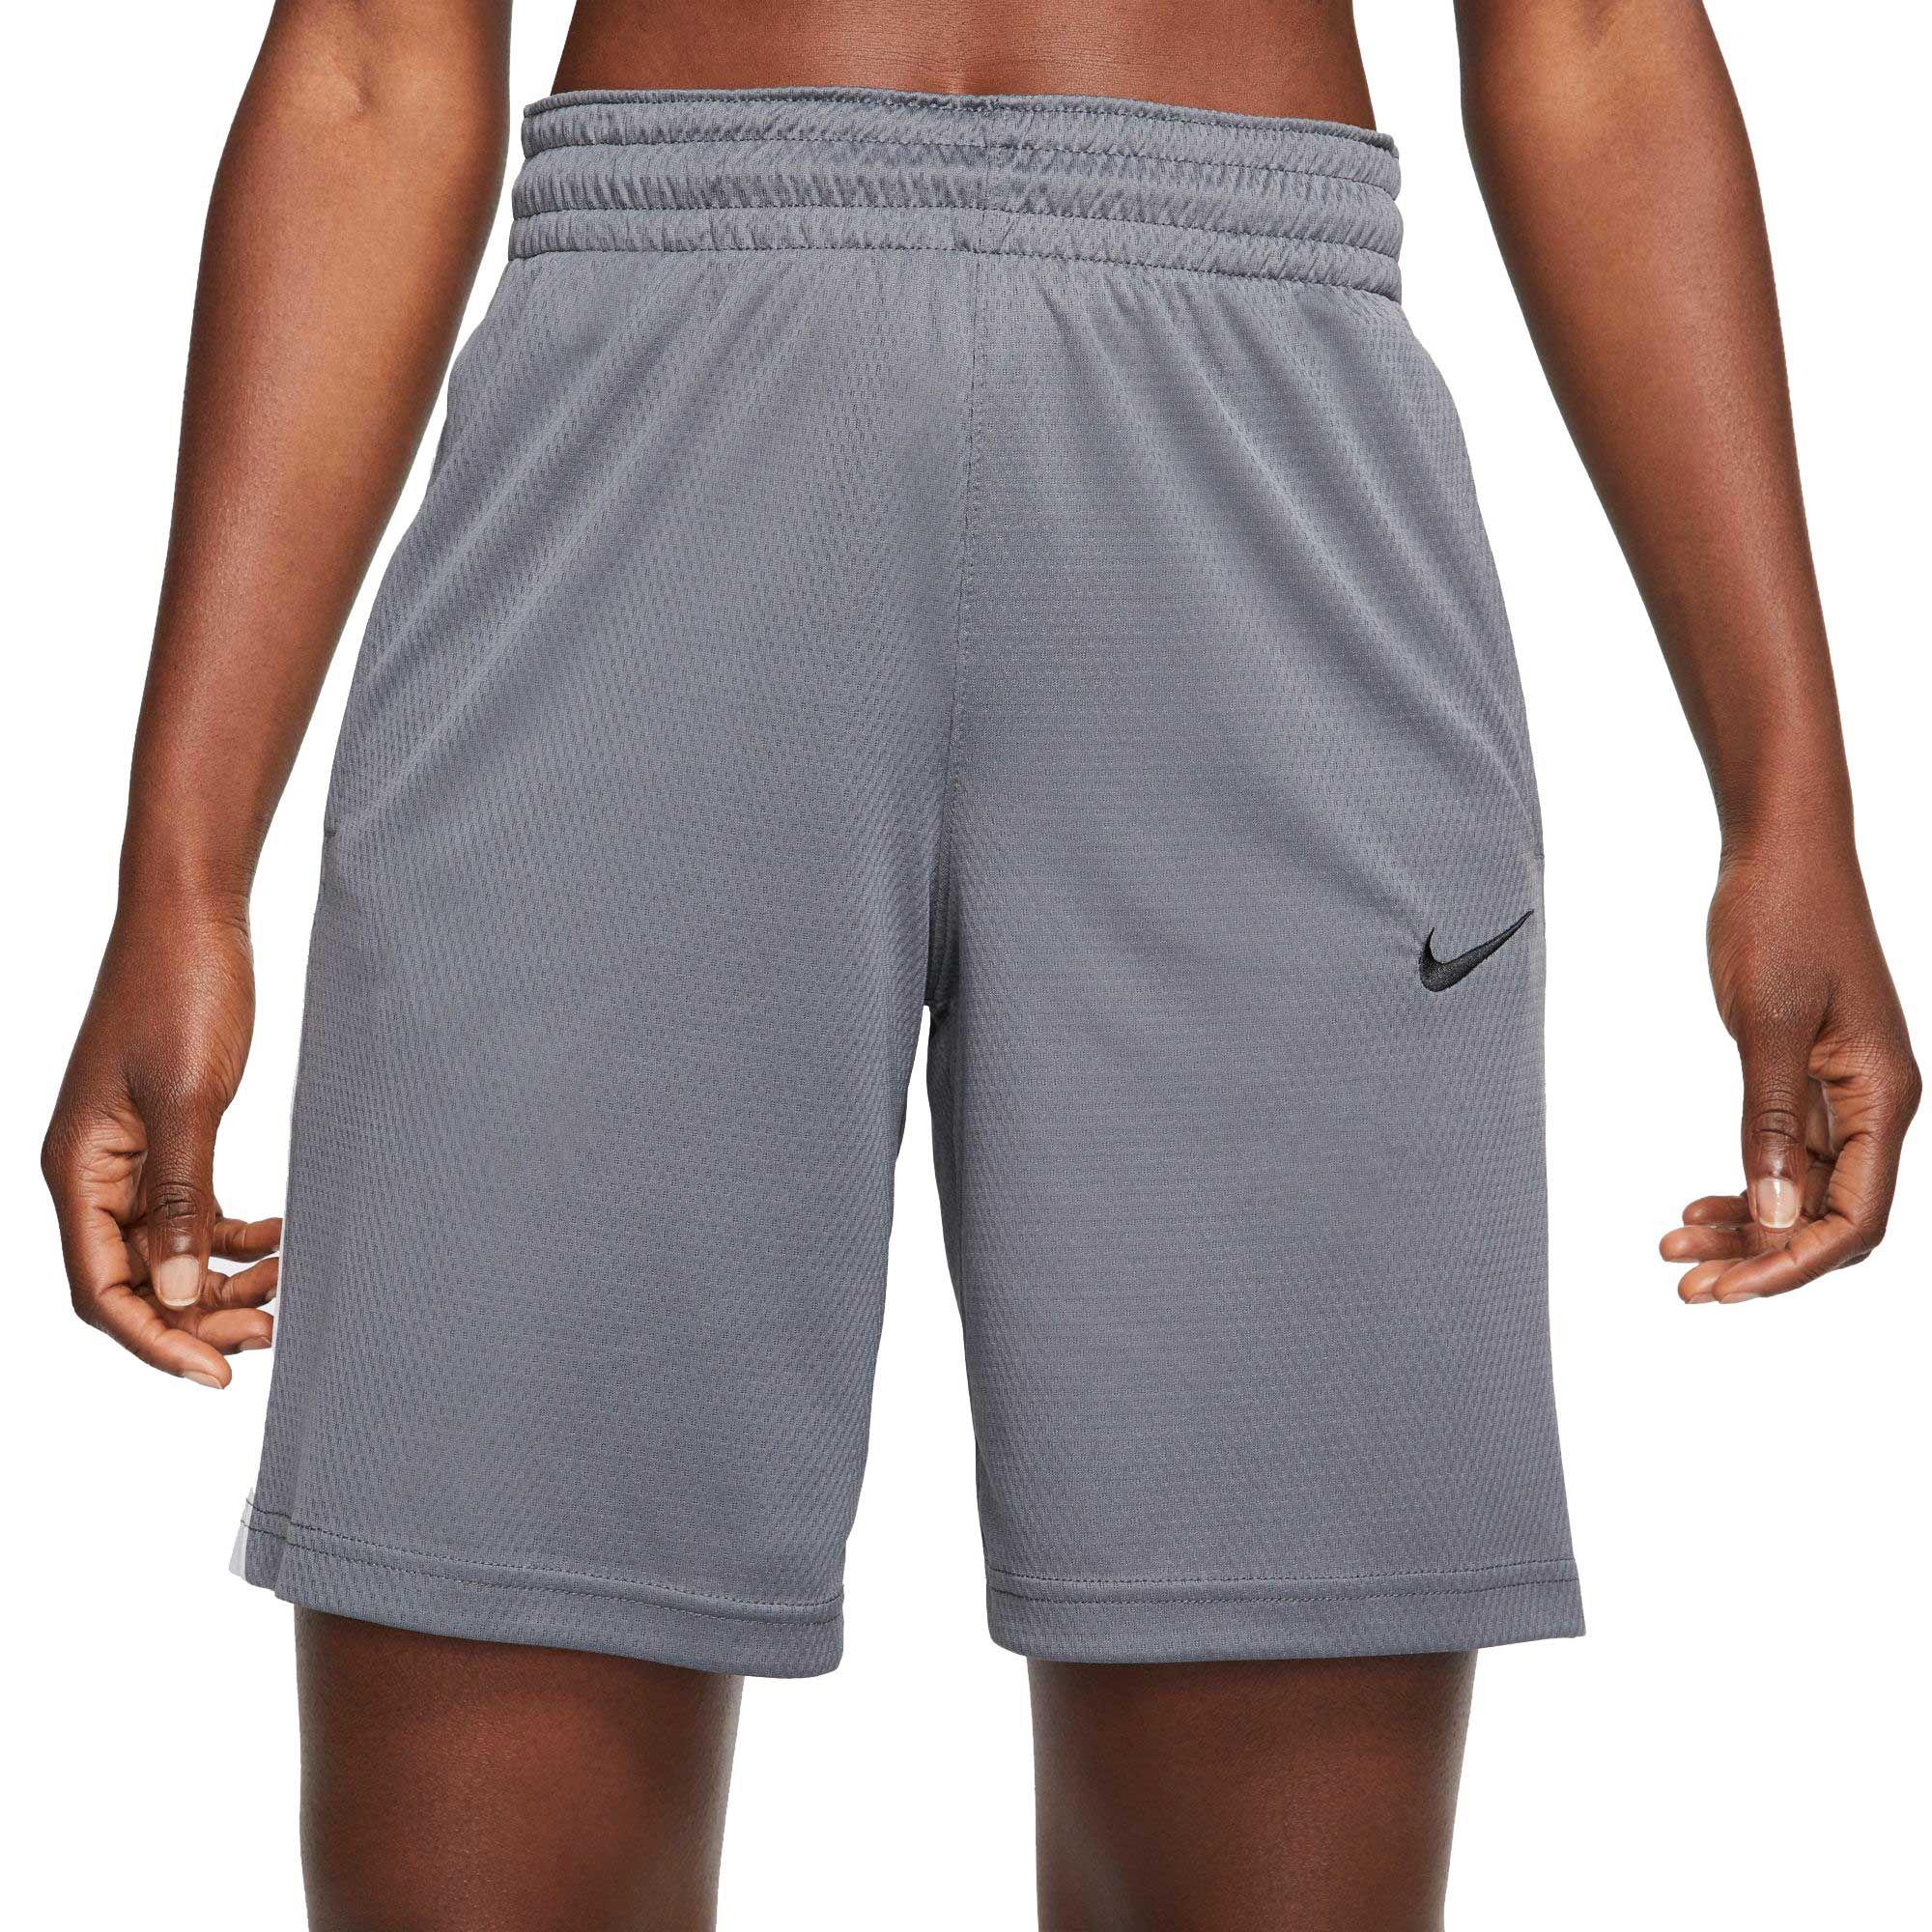 Nike Dri-fit Basketball Shorts in Dark Grey (Gray) - Lyst